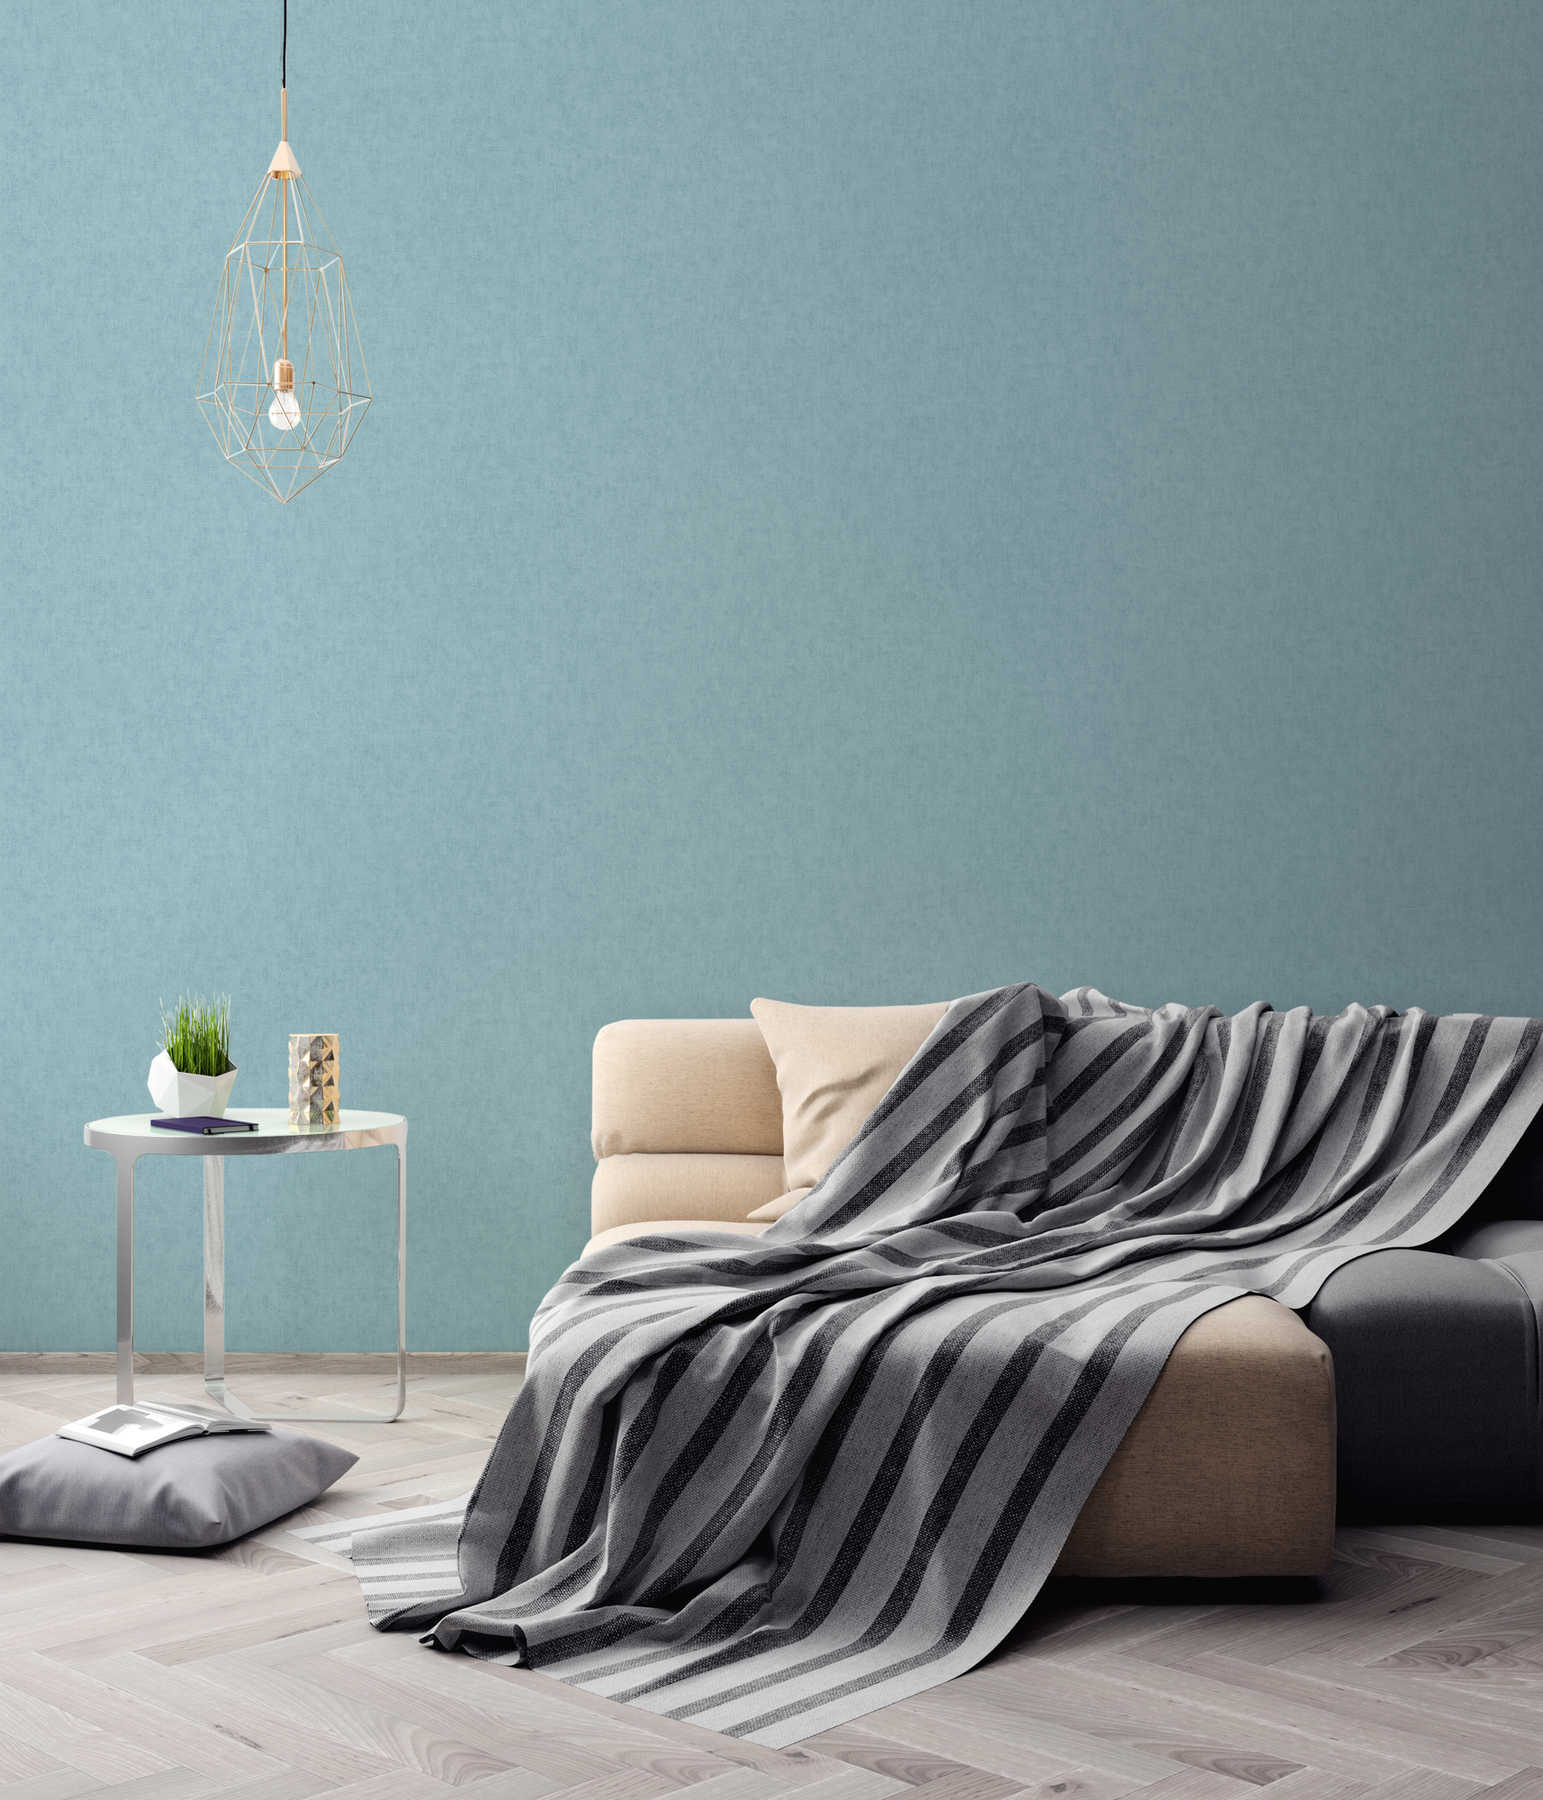             Wallpaper plain, linen look & Scandinavian style - Blue
        